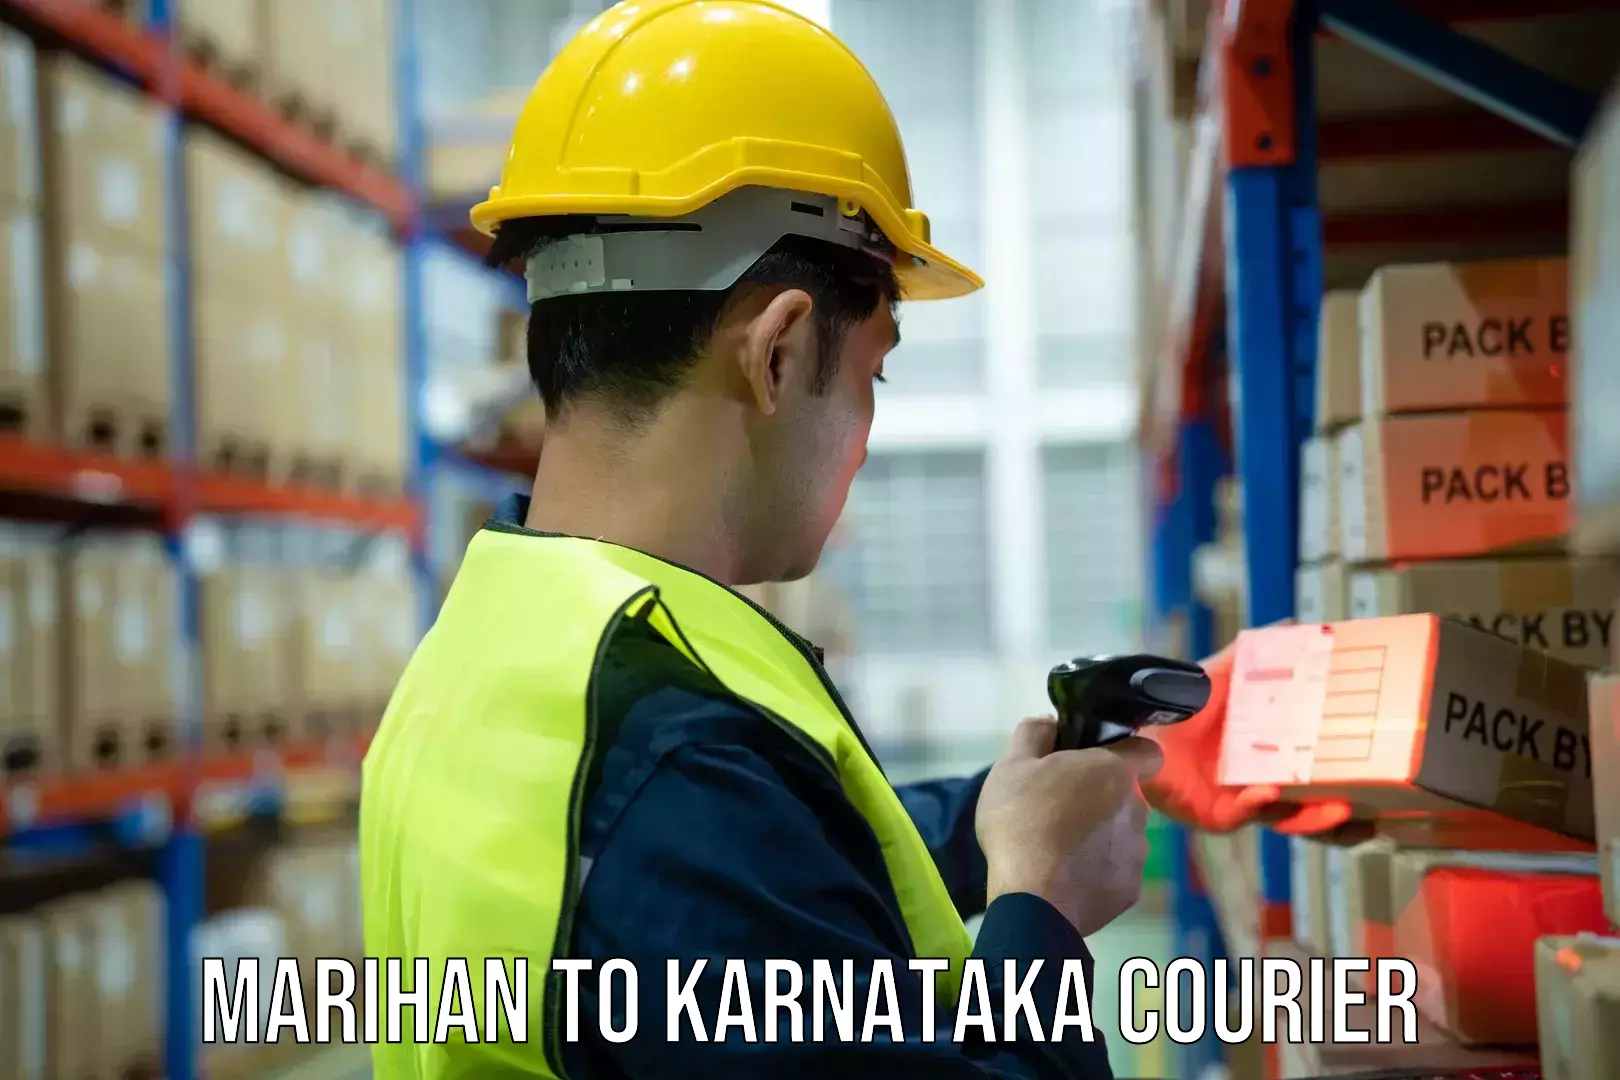 Holiday shipping services Marihan to Karnataka